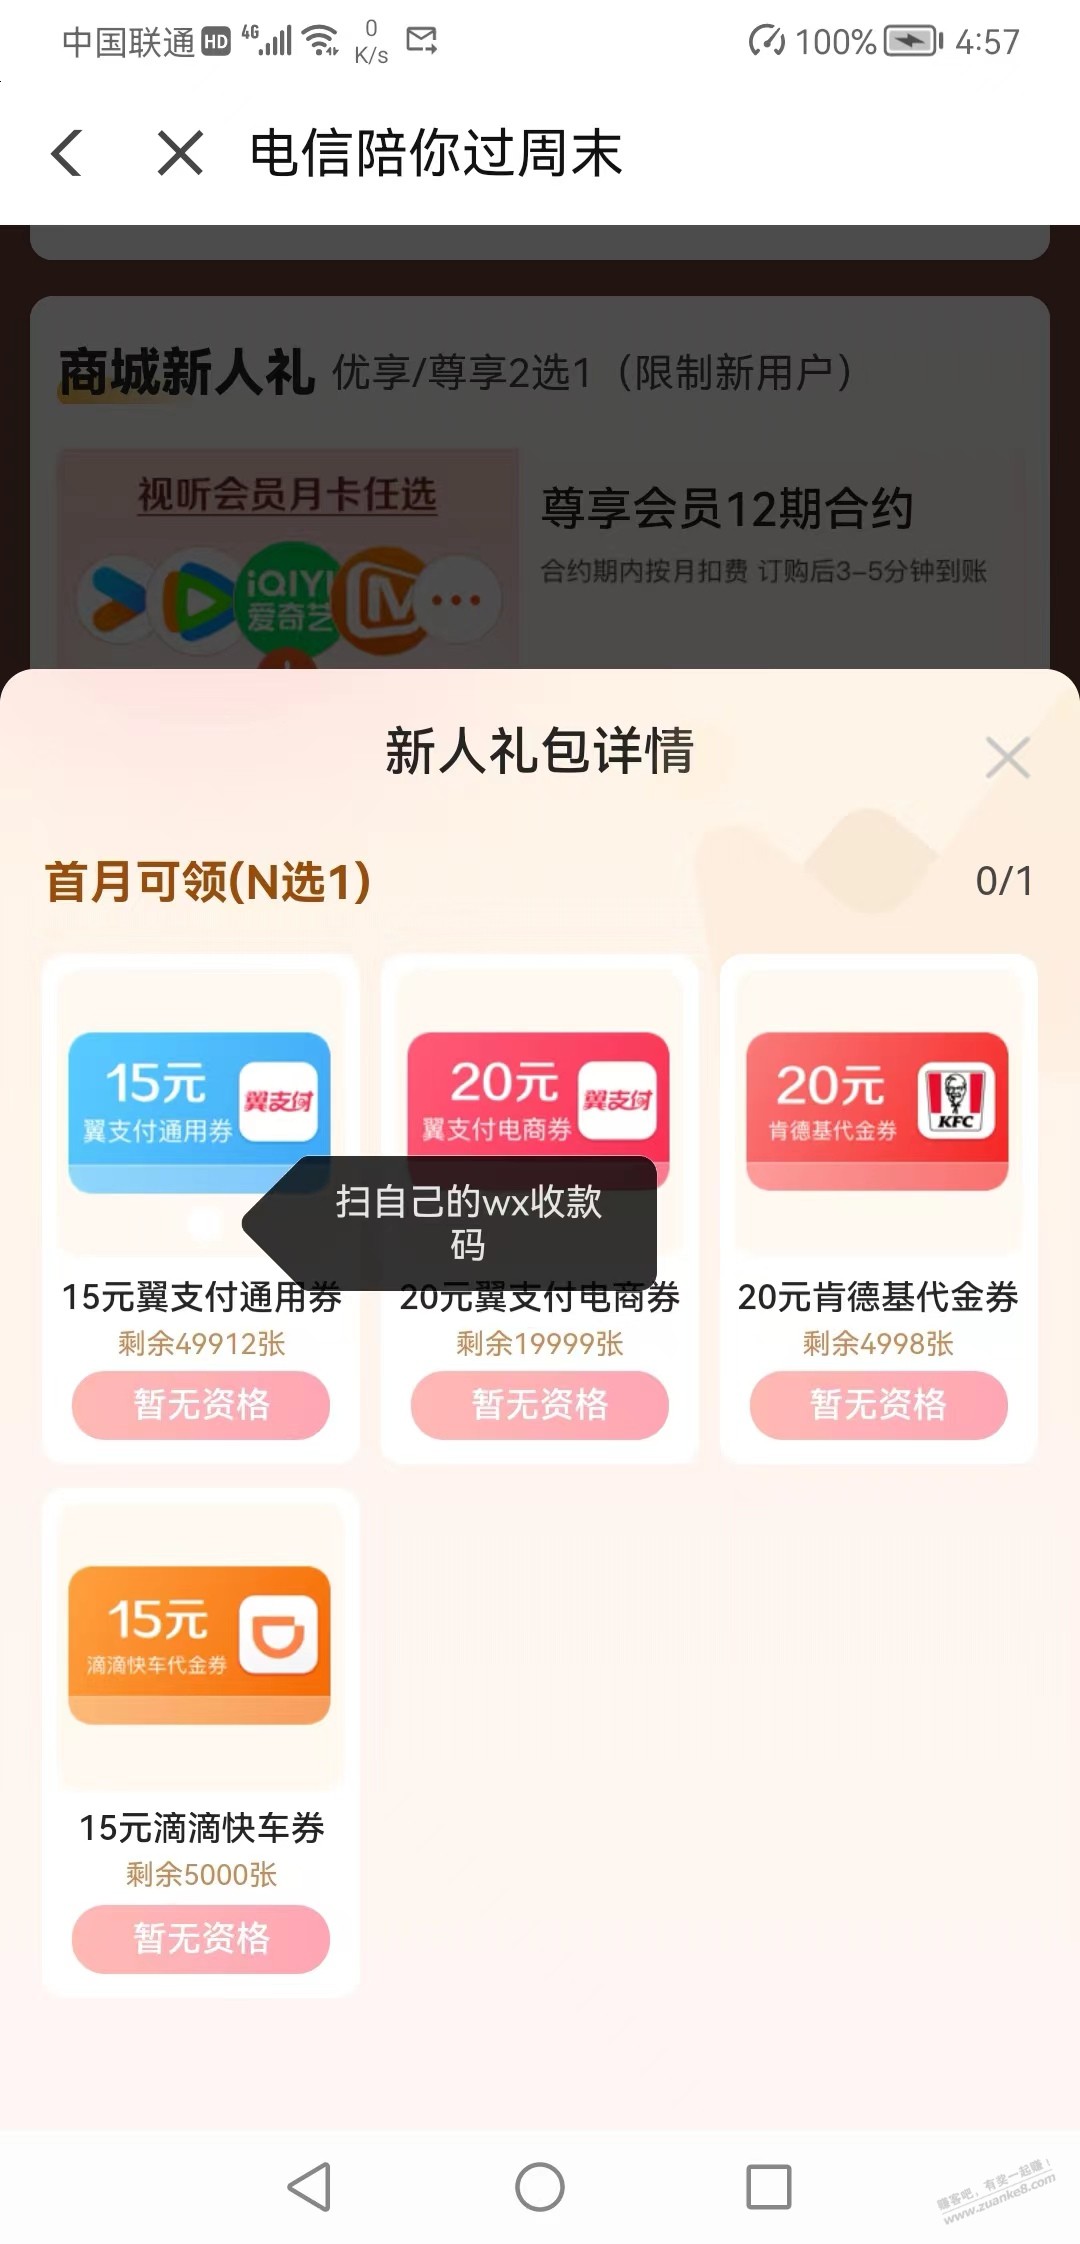 中国电信15话费换15现金+5话费-惠小助(52huixz.com)